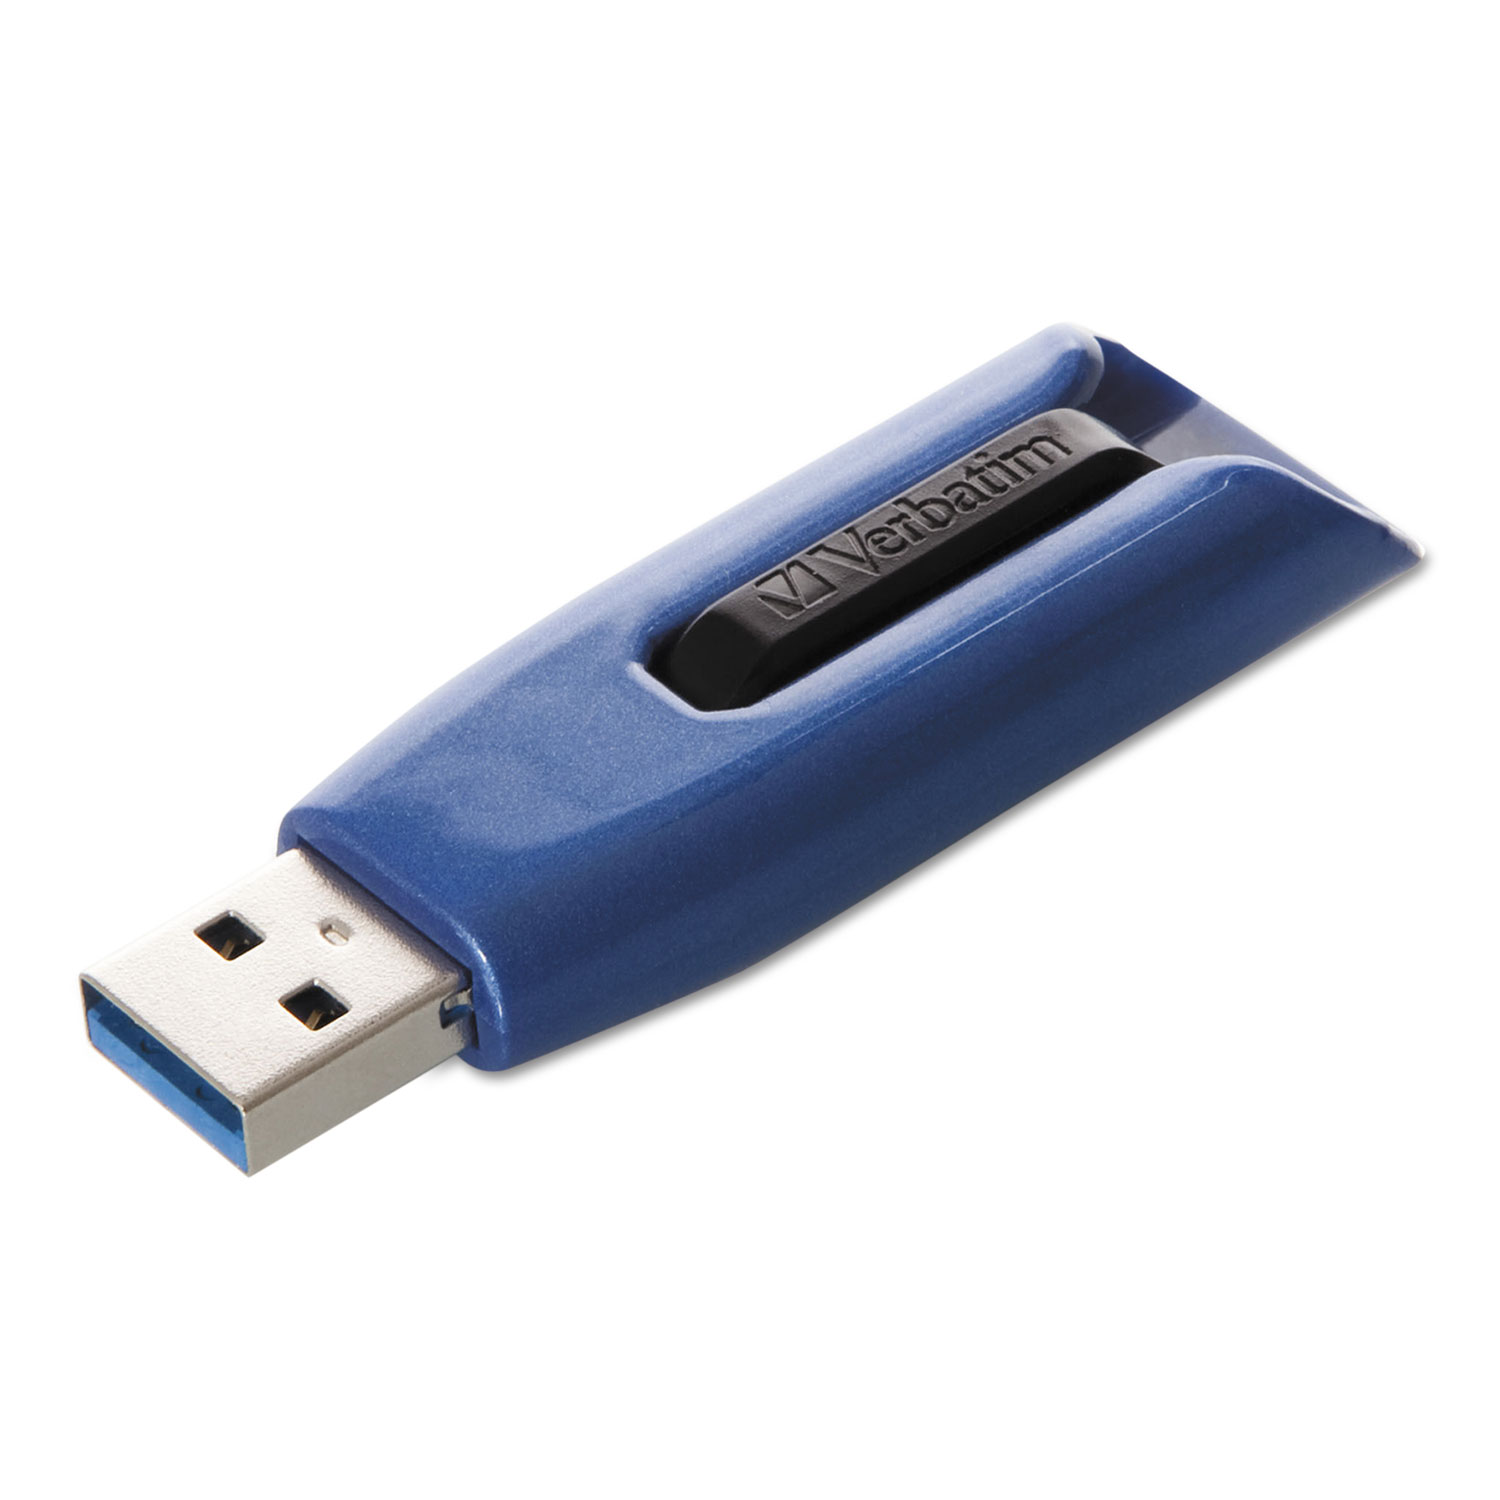 V3 Max USB 3.0 Drive, 32GB, Blue